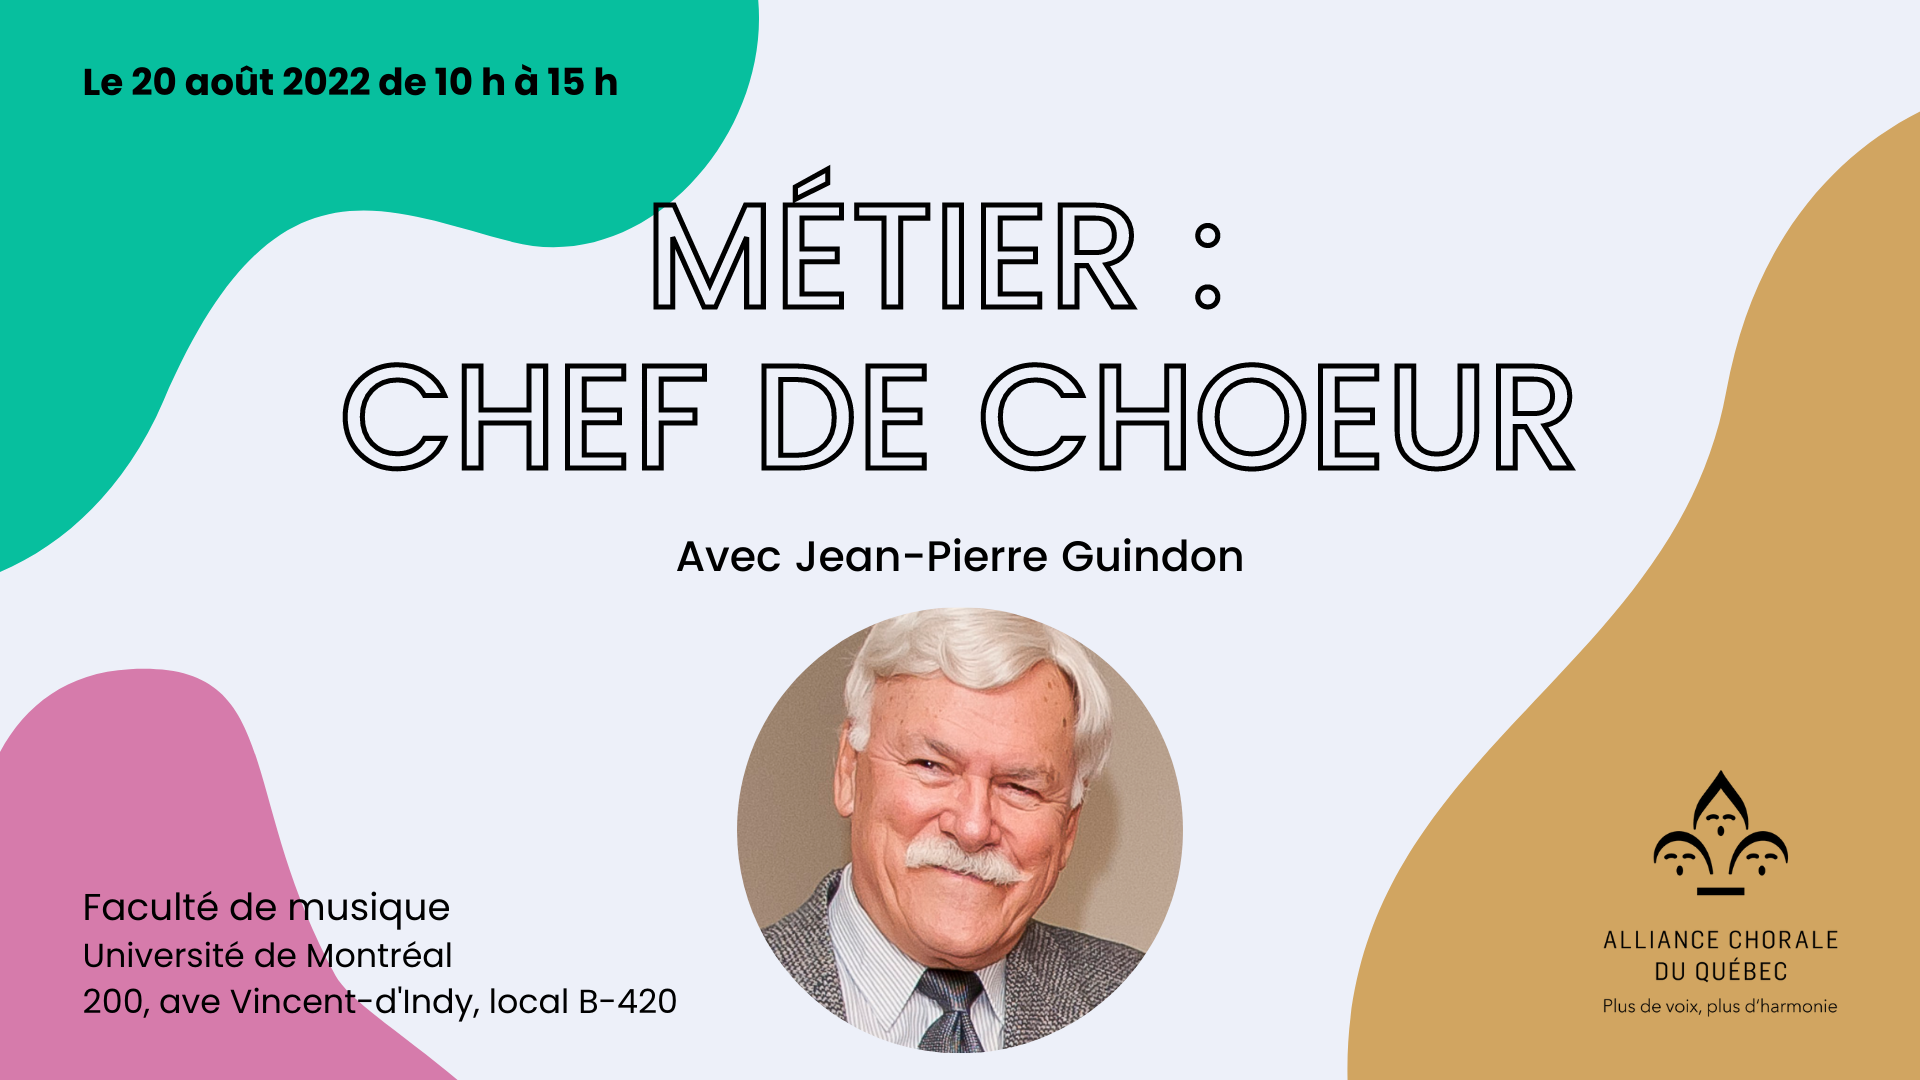 Métier : Chef de choeur avec Jean-Pierre Guindon